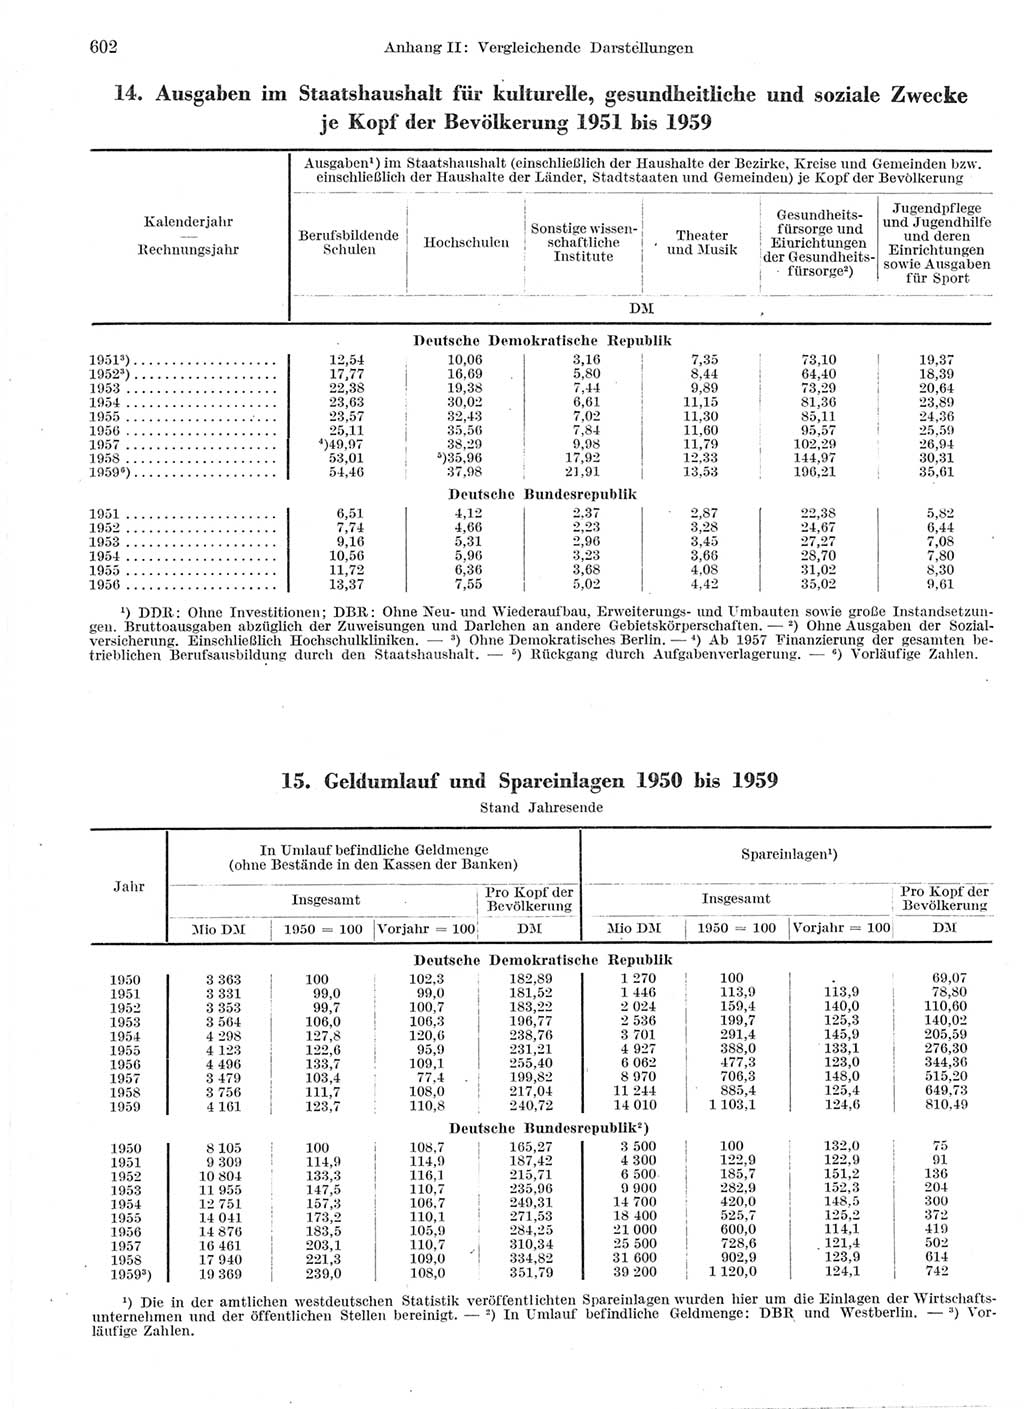 Statistisches Jahrbuch der Deutschen Demokratischen Republik (DDR) 1959, Seite 602 (Stat. Jb. DDR 1959, S. 602)